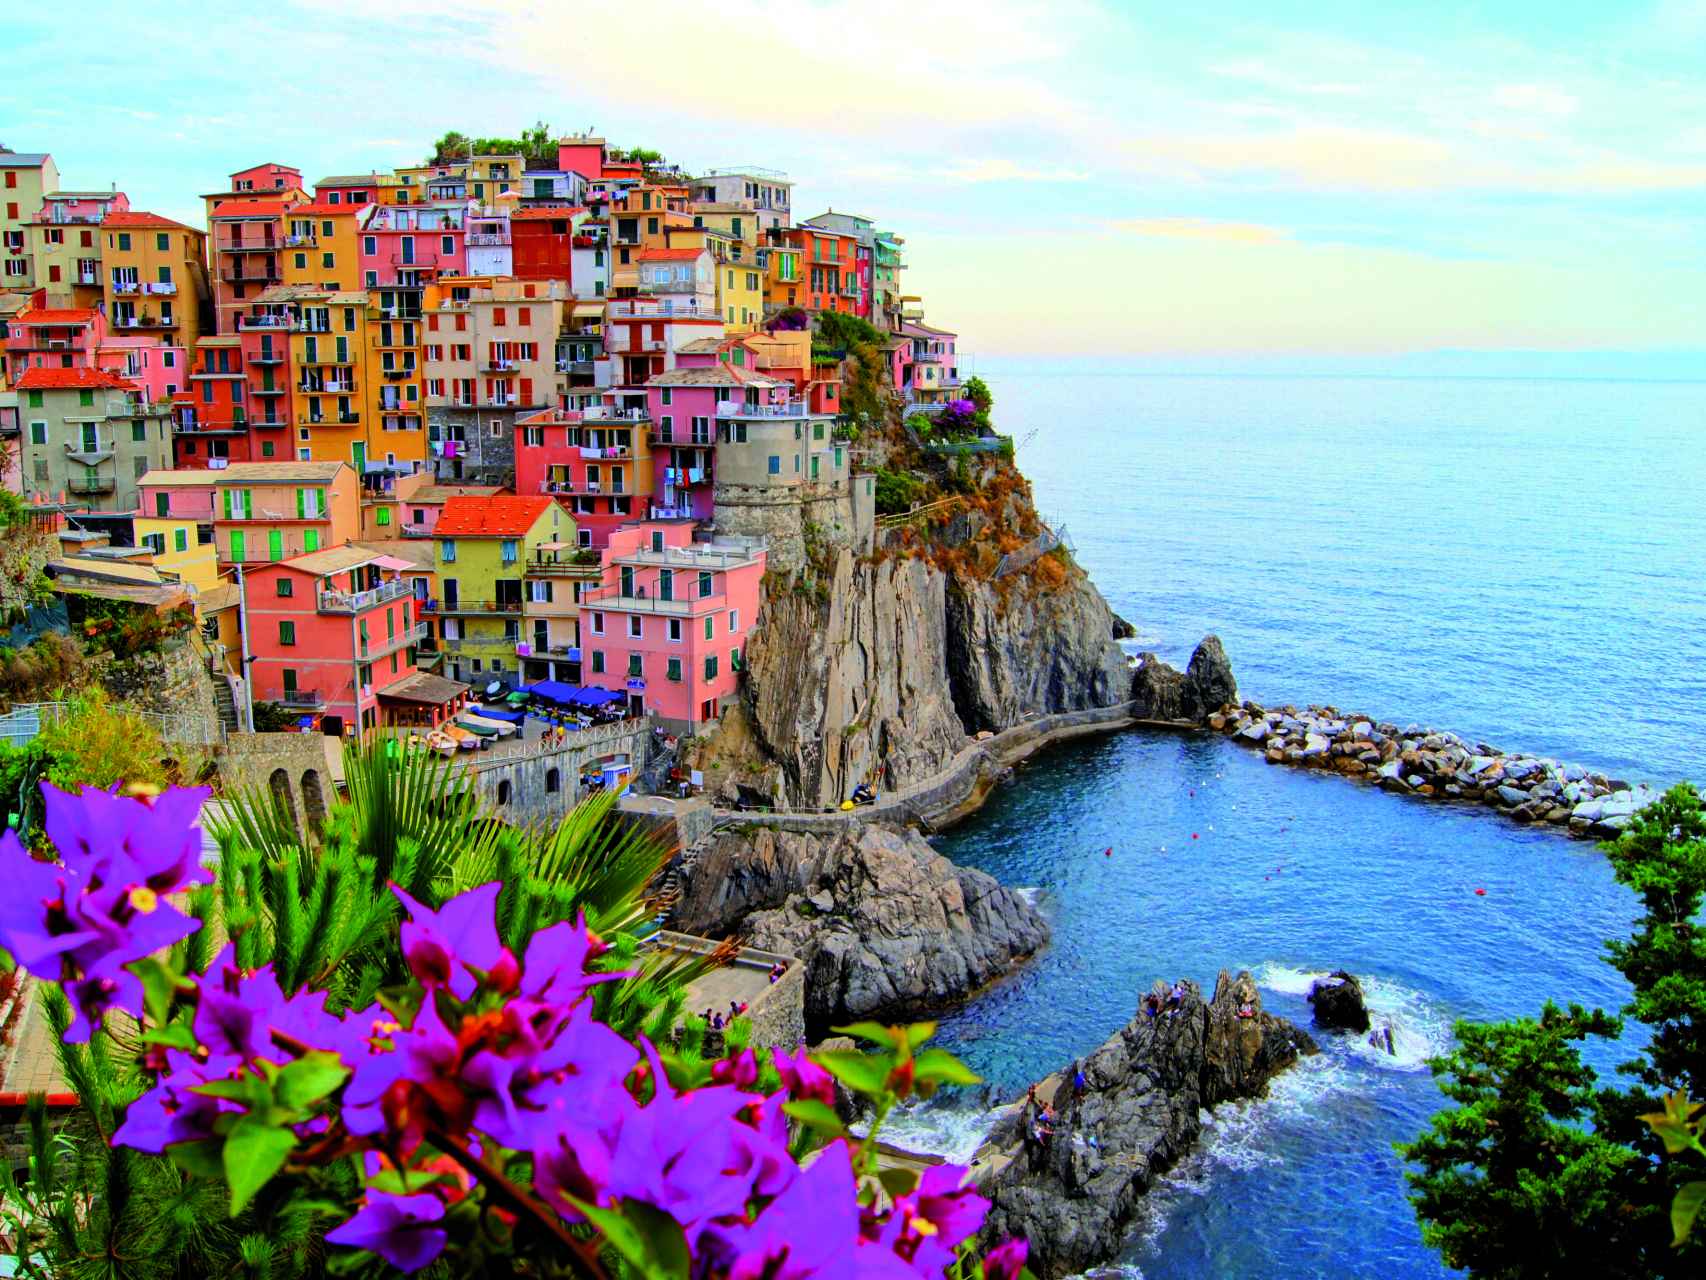 Te enamorarás inevitablemente de la brisa y del color de La Spezia.